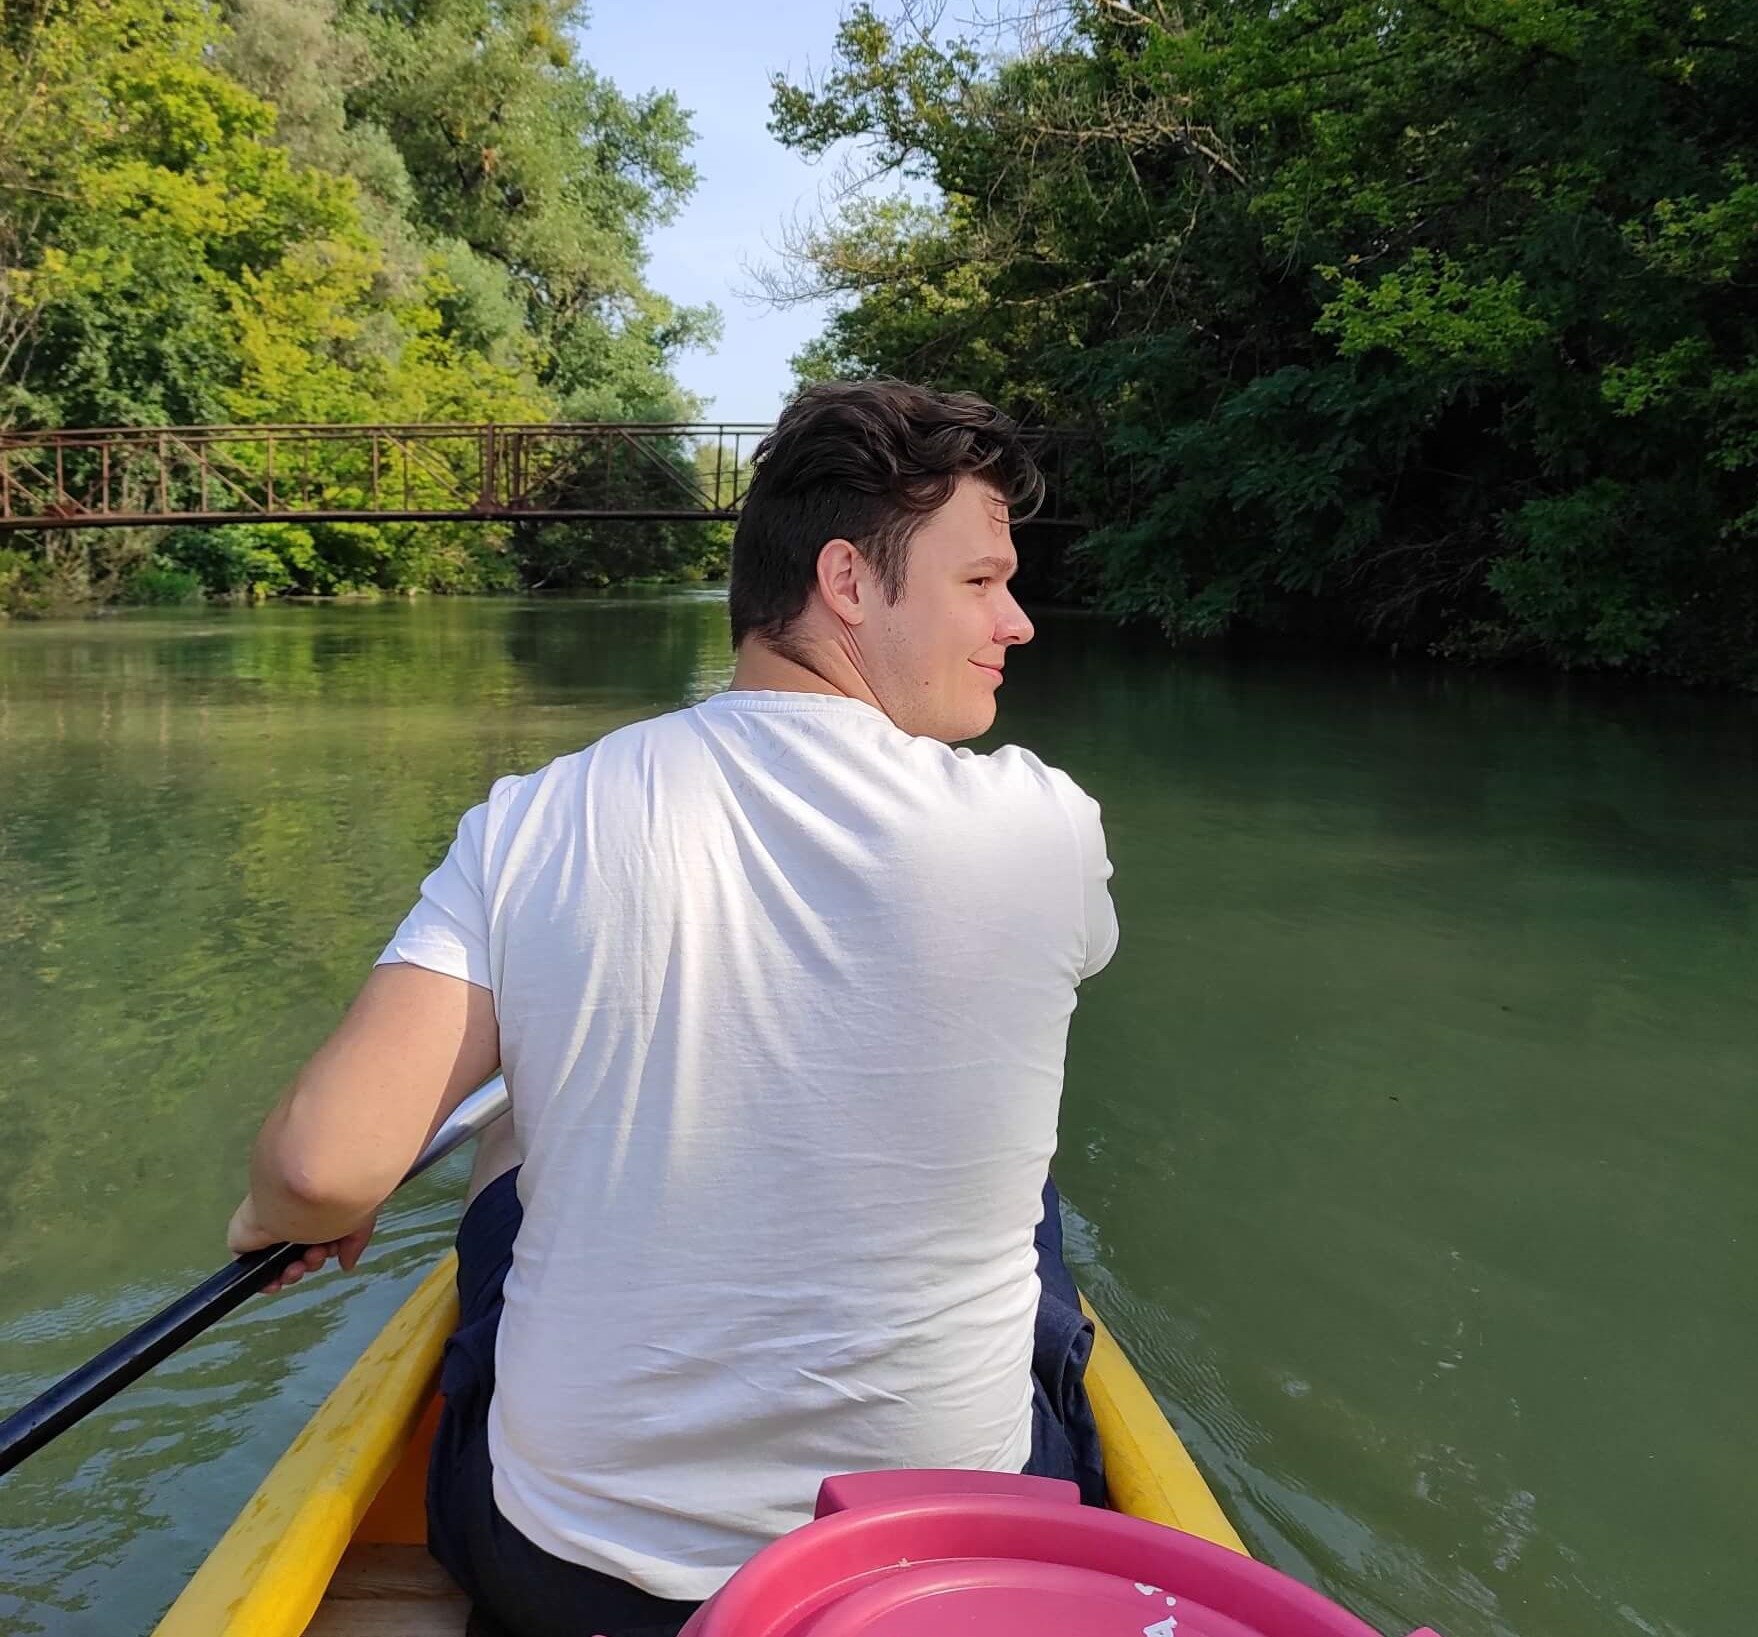 Radek in a canoe going down the river.